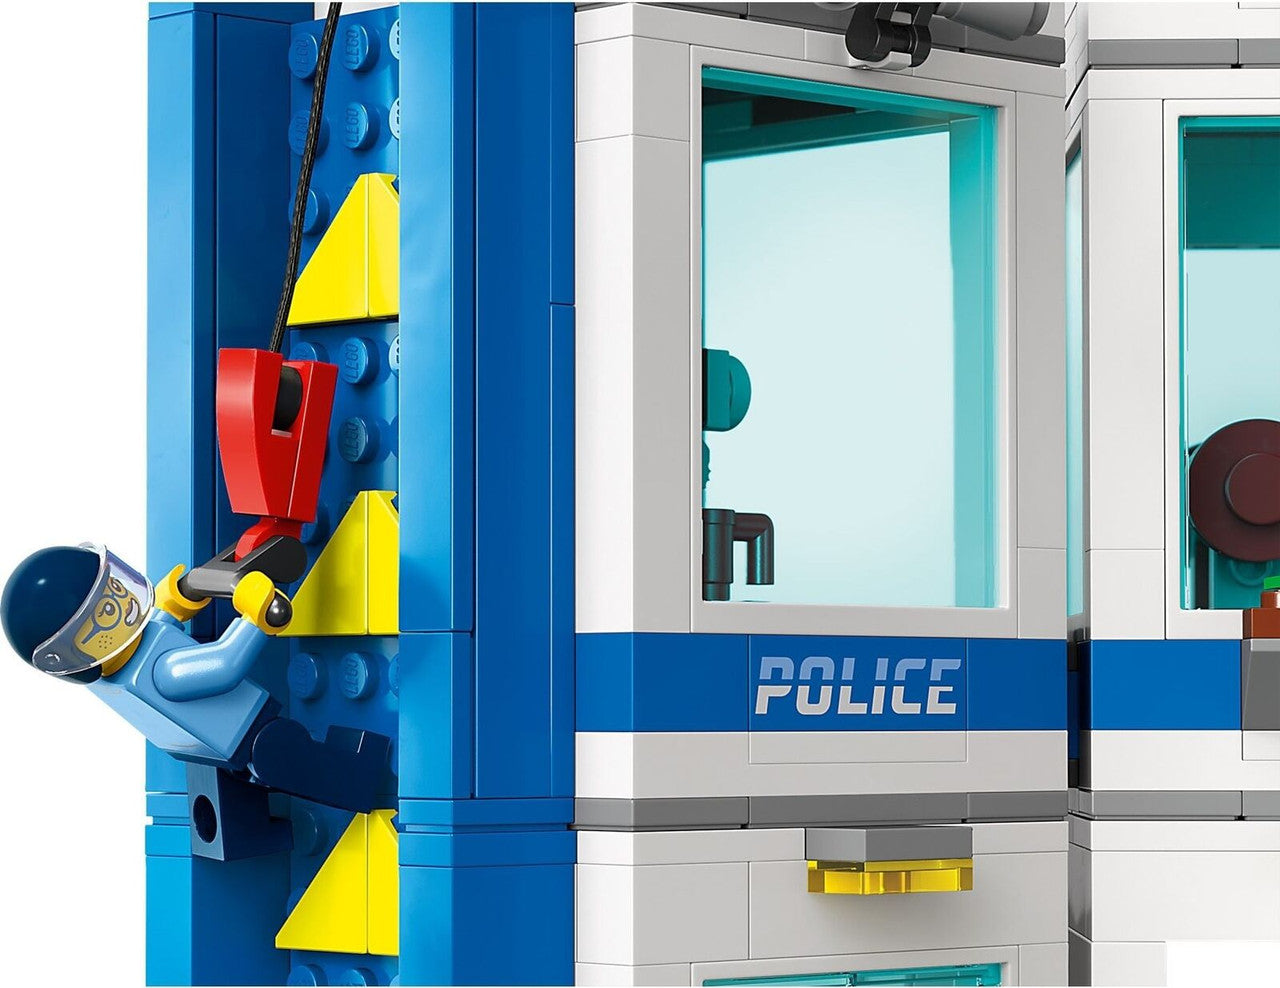 LEGO Police Training Academy Set 60372